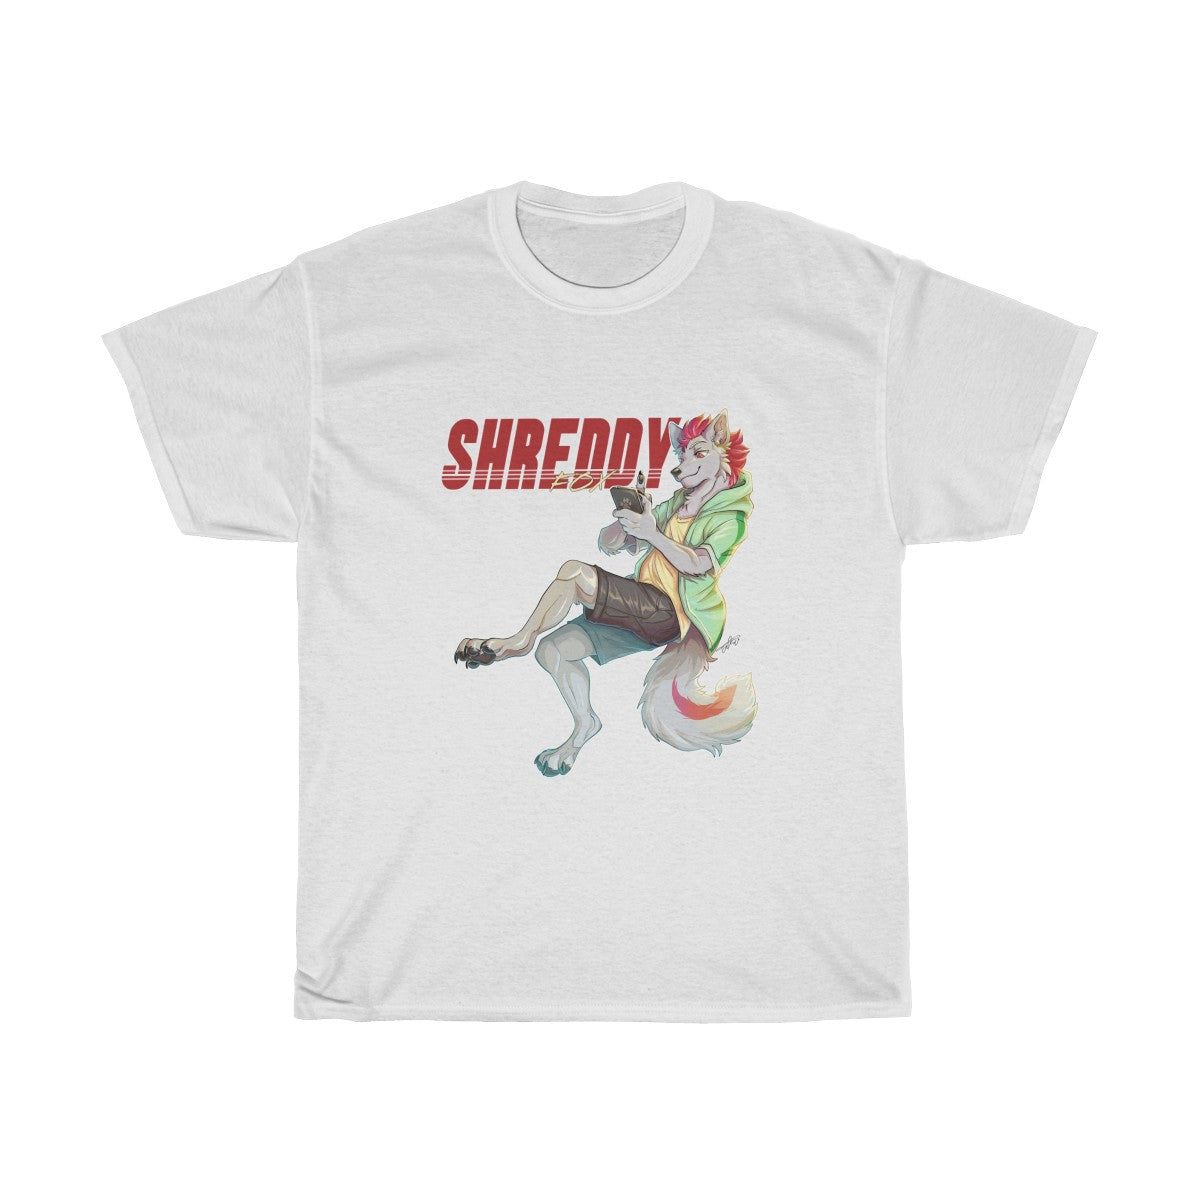 Scrolling - T-Shirt T-Shirt Shreddyfox White S 